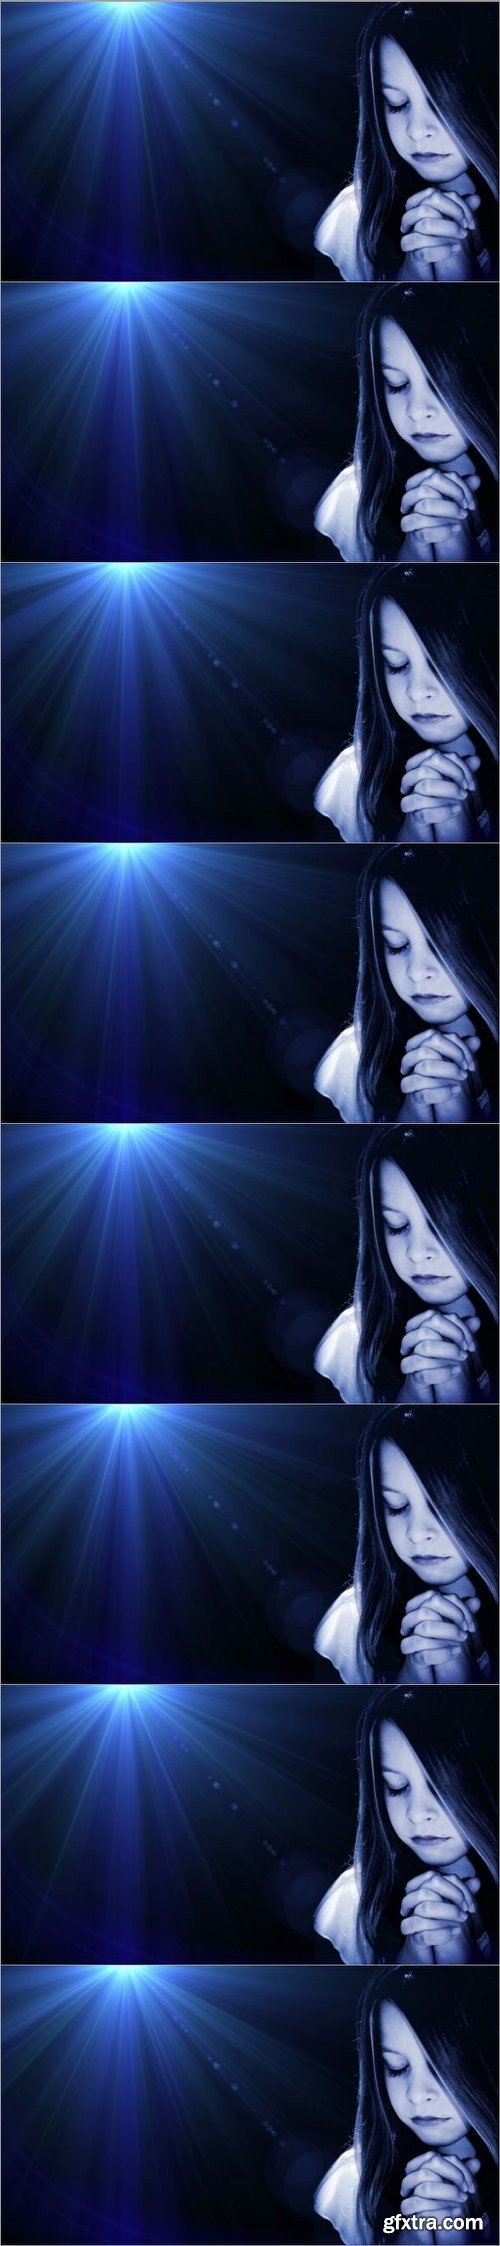 Girl Praying Blue Flare